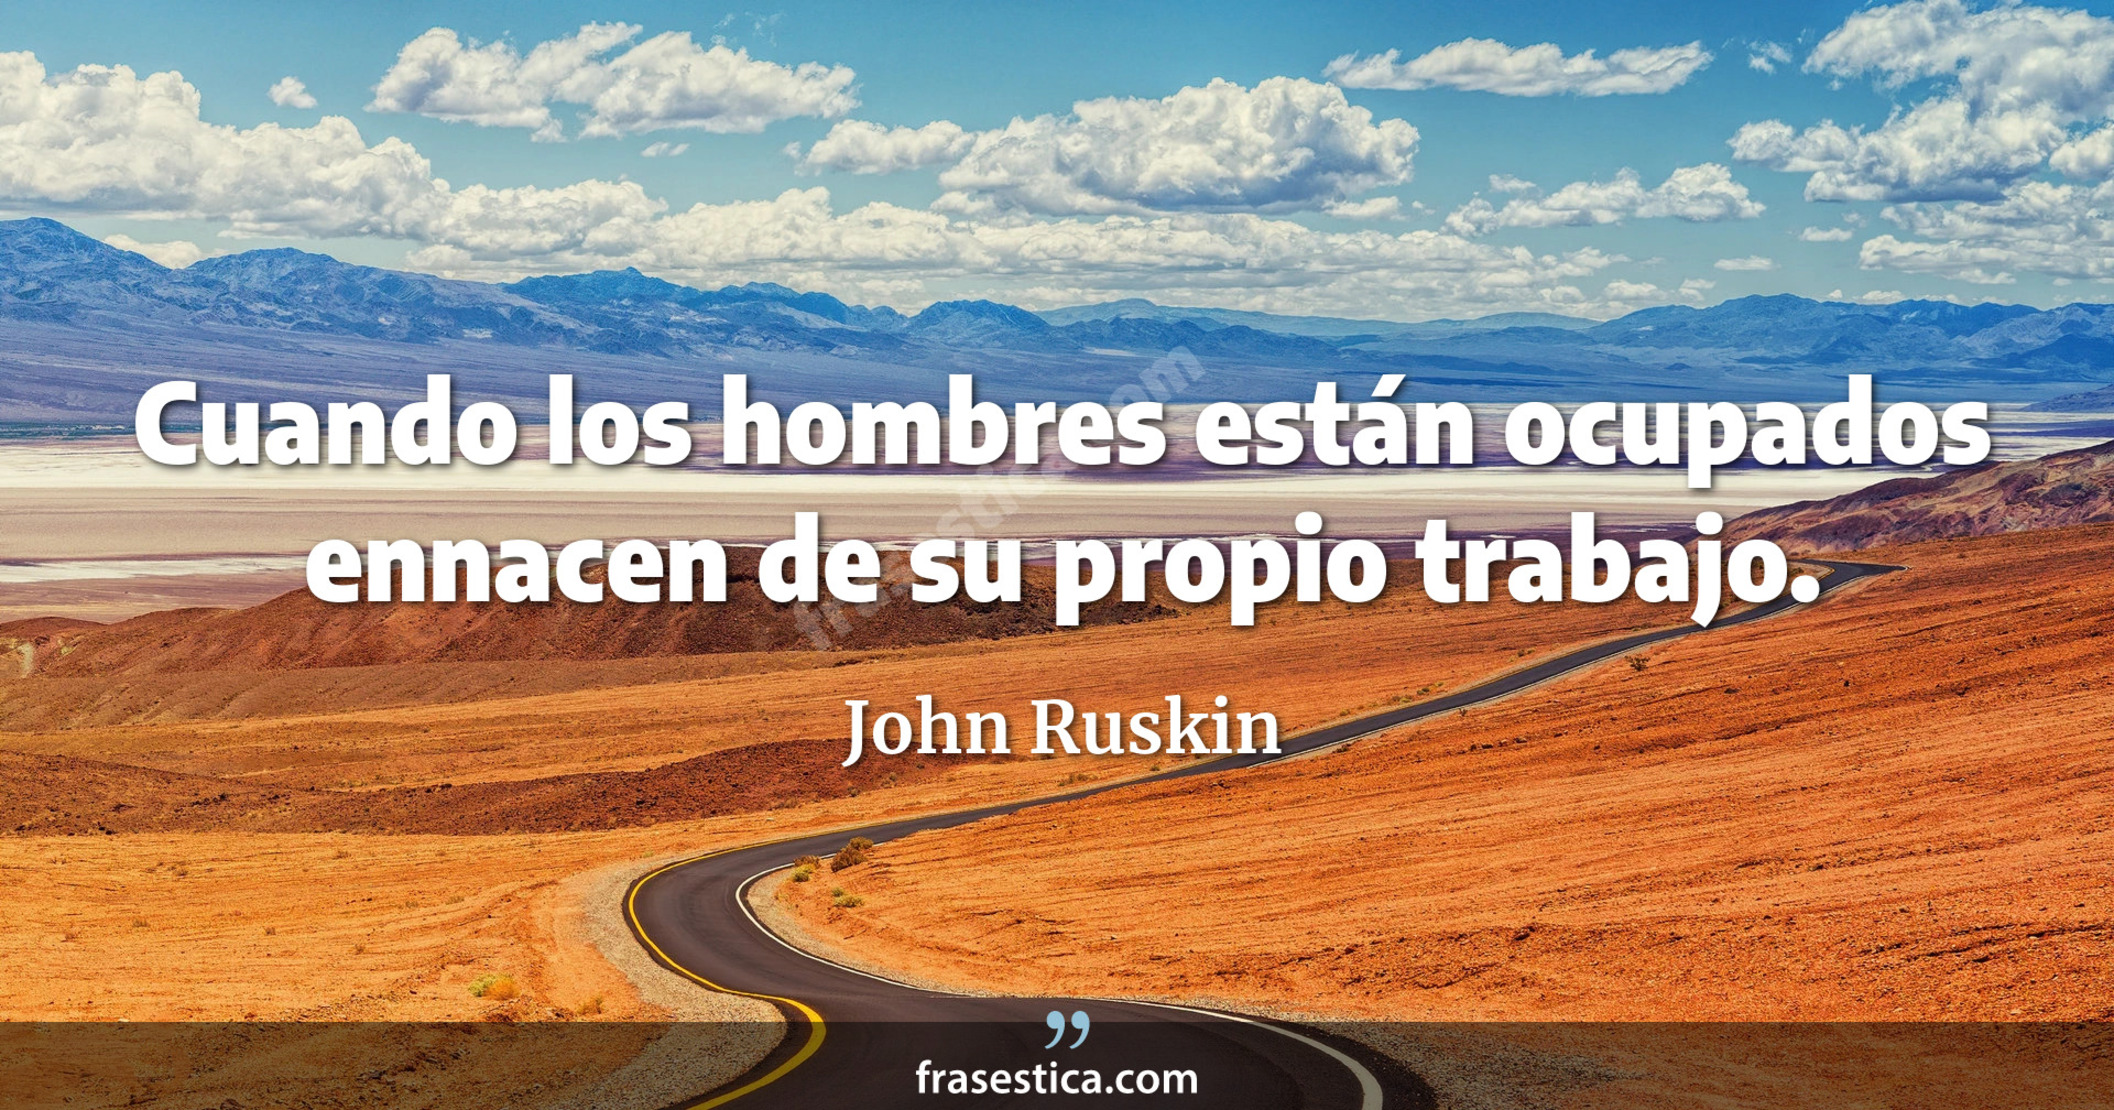 Cuando los hombres están ocupados ennacen de su propio trabajo. - John Ruskin